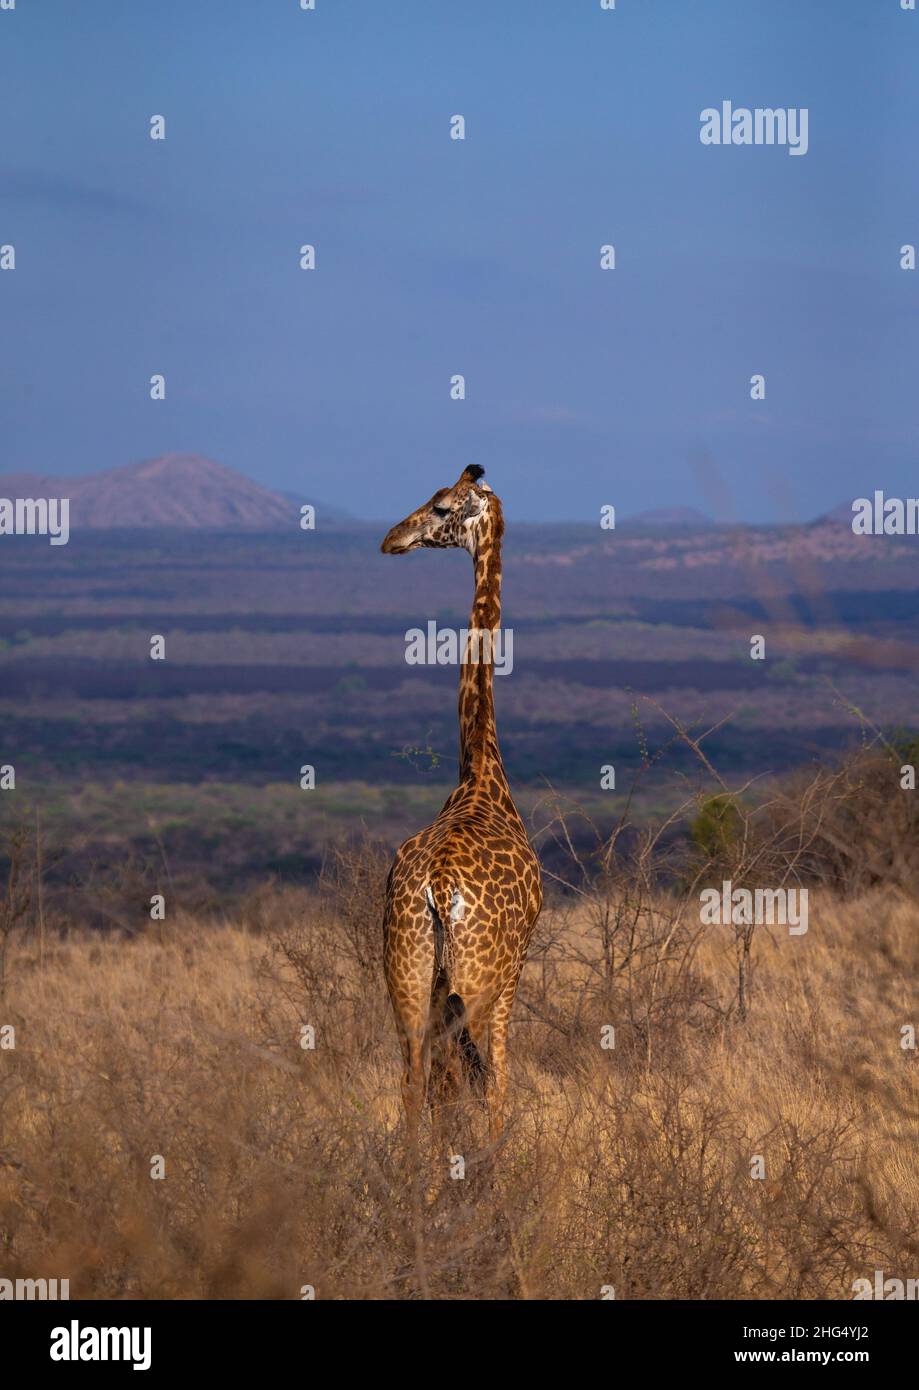 Girafe dans le Bush, province côtière, parc national de Tsavo West, Kenya Banque D'Images